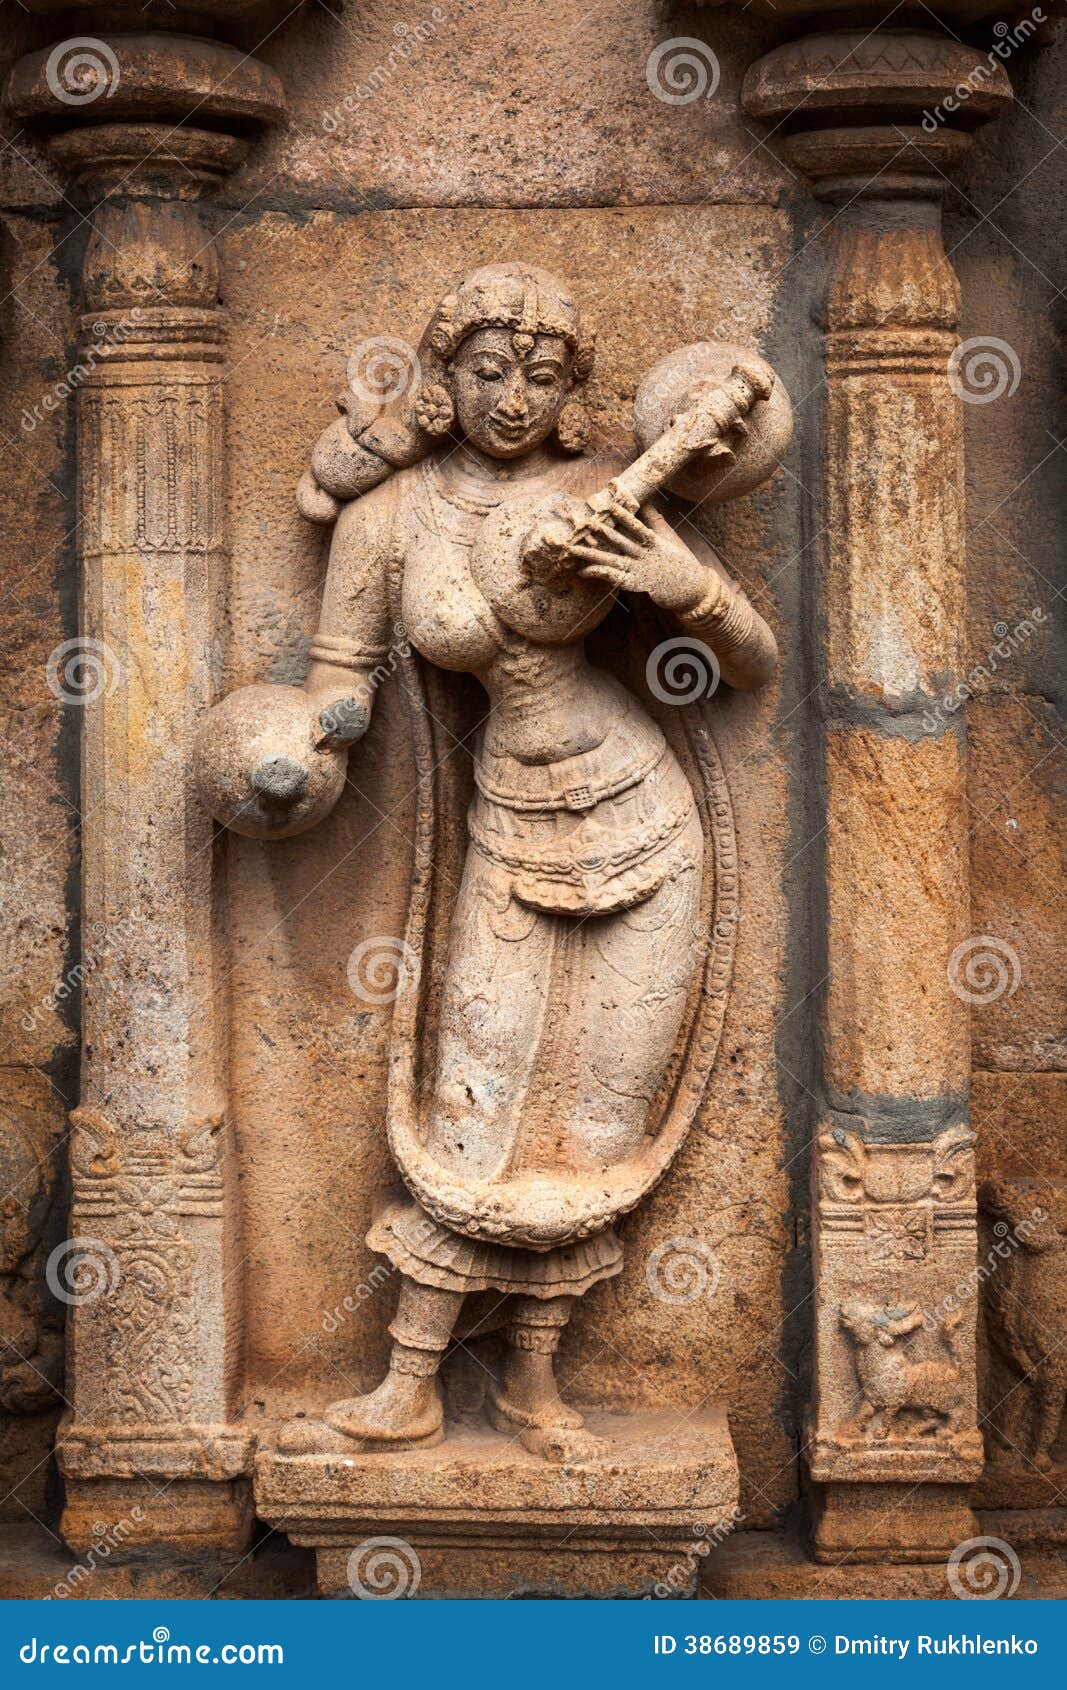 bas reliefes in hindu temple. tamil nadu, india